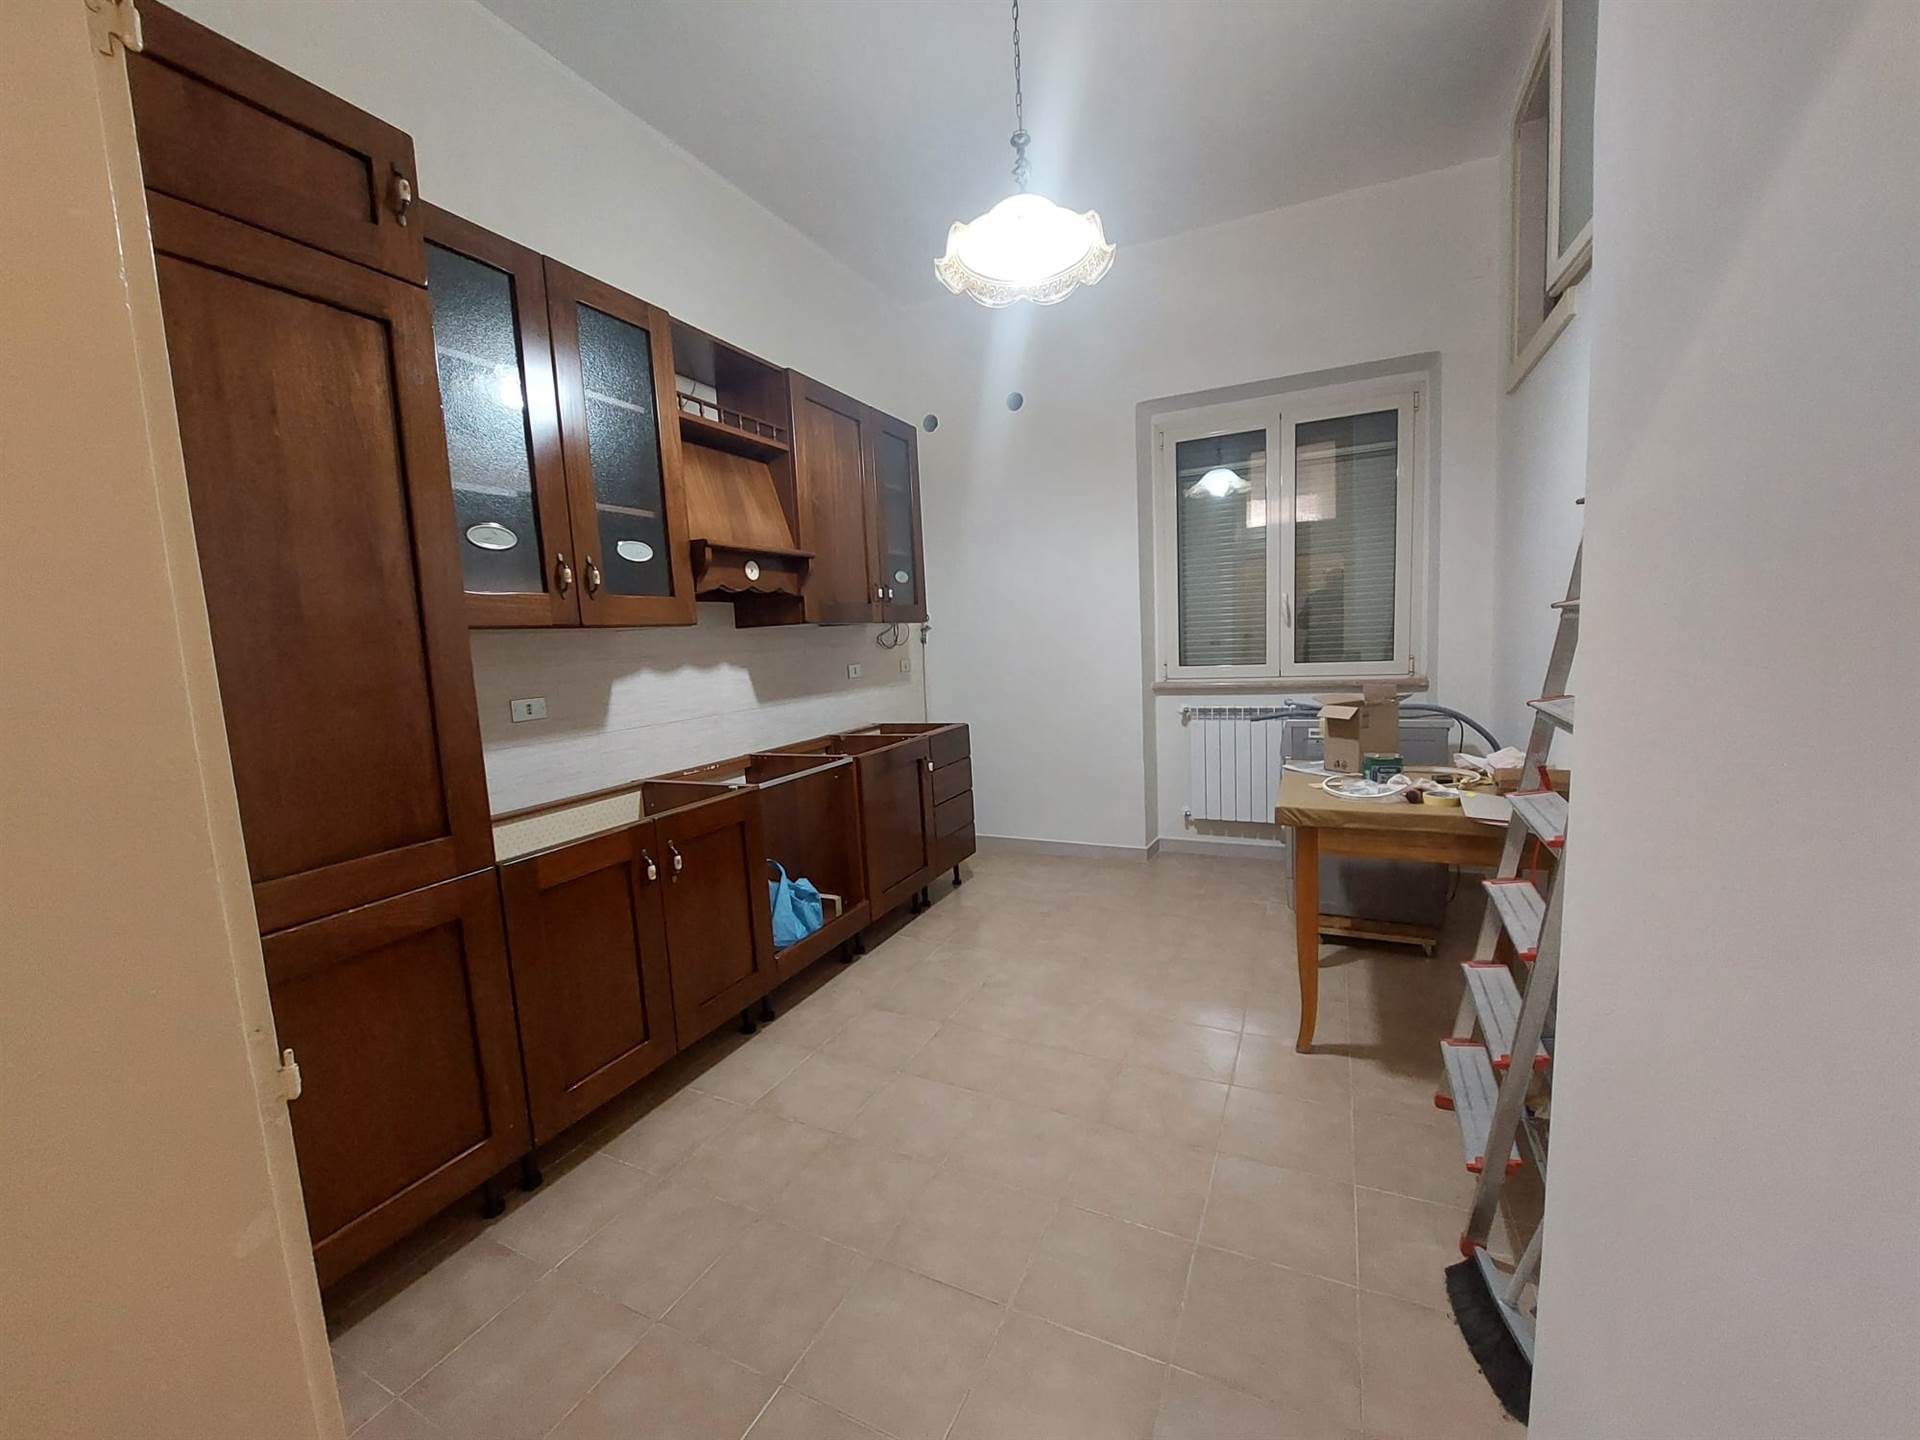 Appartamento in affitto a Barletta, 2 locali, zona Località: BARBERINI, prezzo € 400 | PortaleAgenzieImmobiliari.it